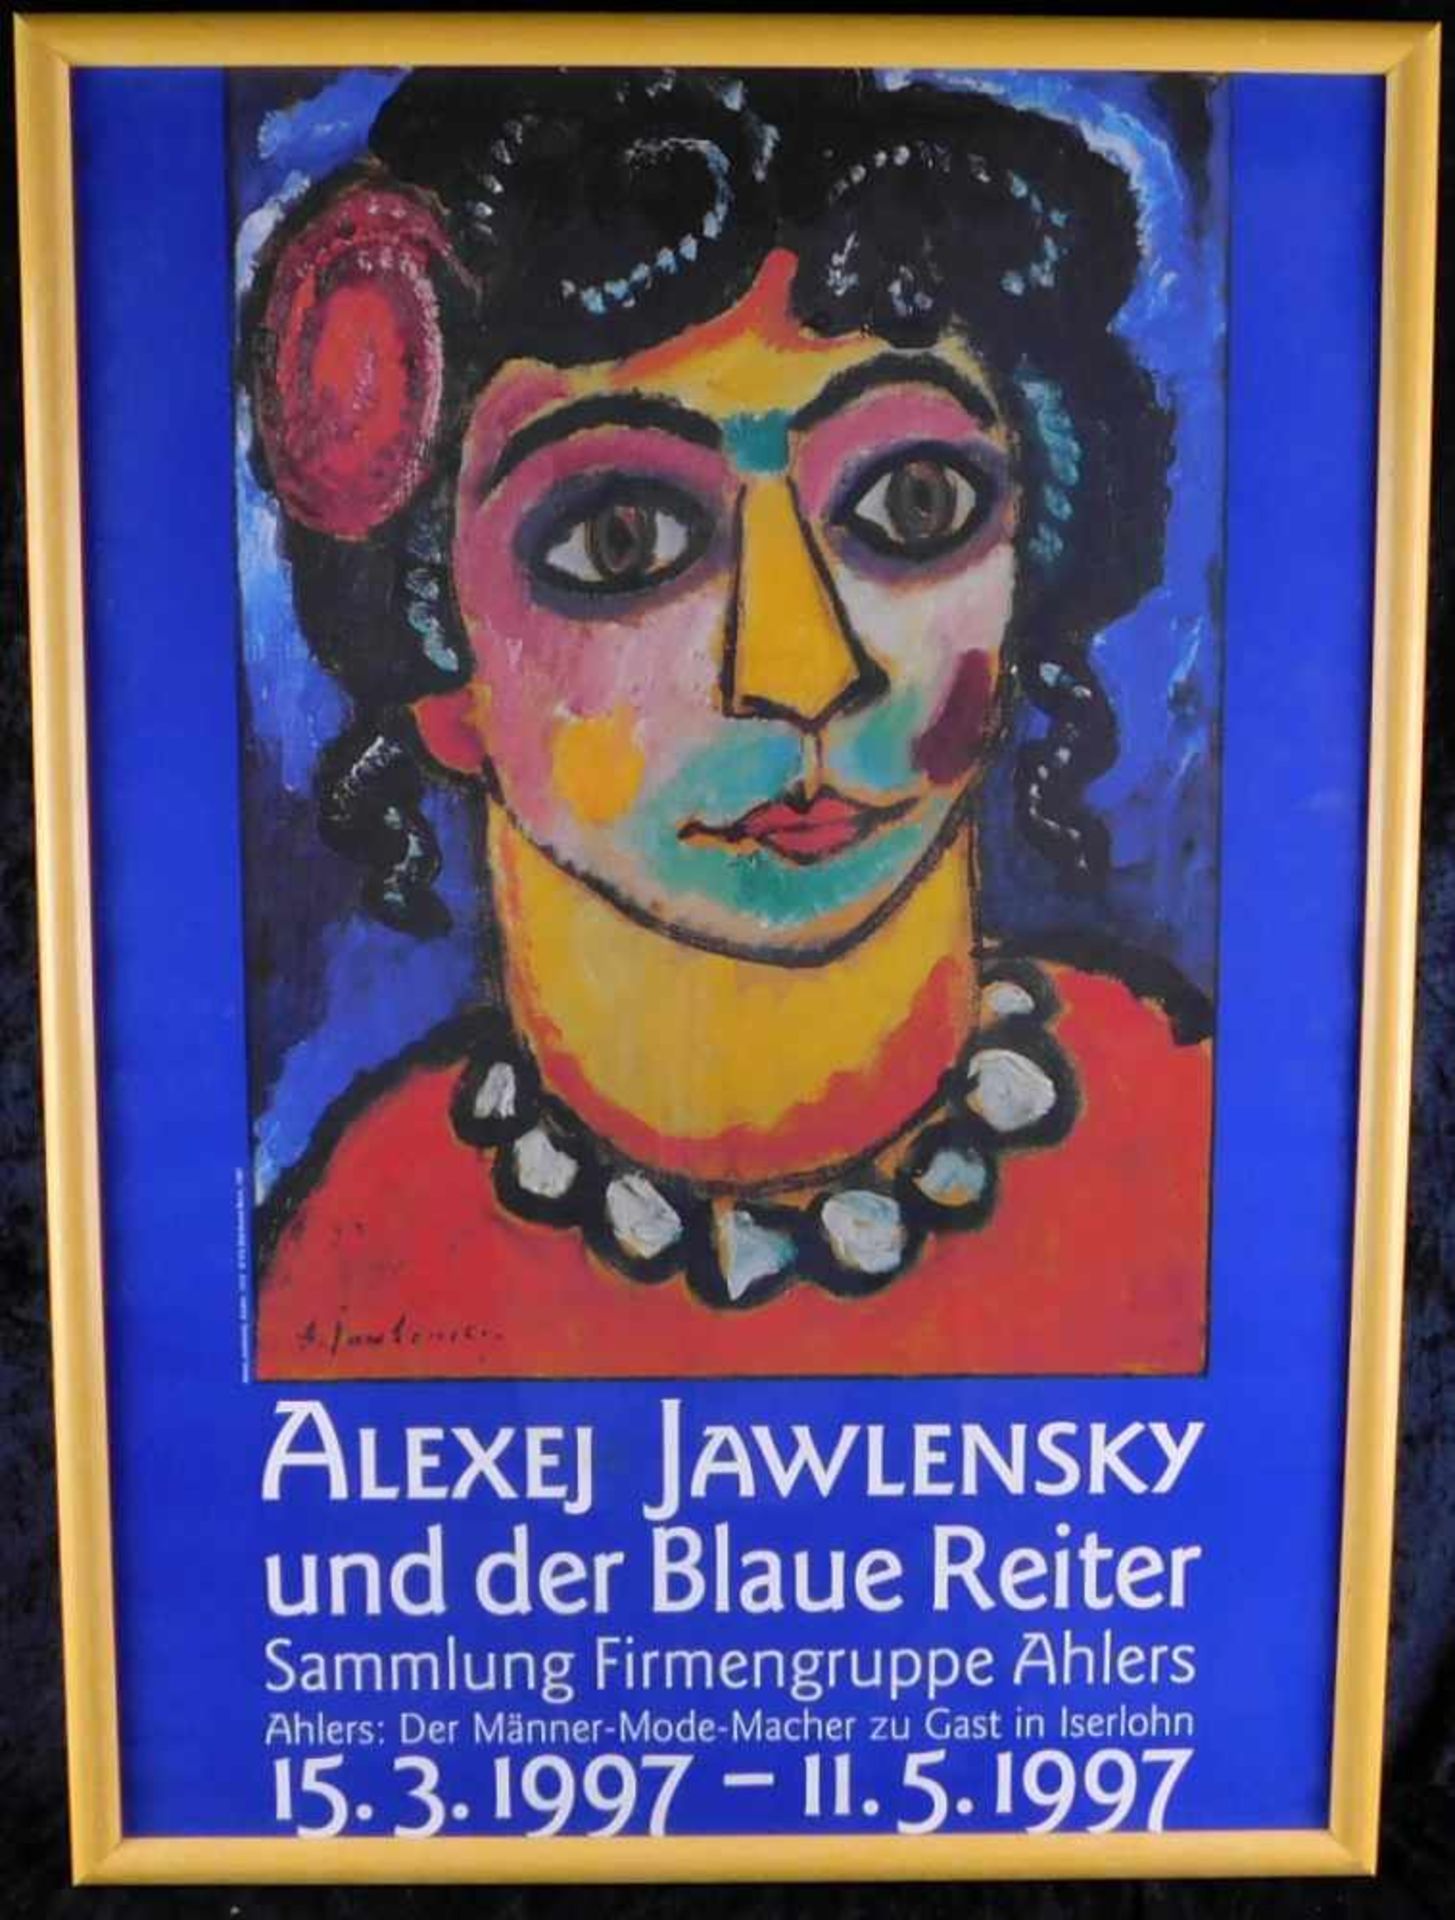 Alexej Jawlensky und der blaue Reiter, Ausstellungsplakat, Offset-Druck, Höhe 74 cm, Breite 53 cm,